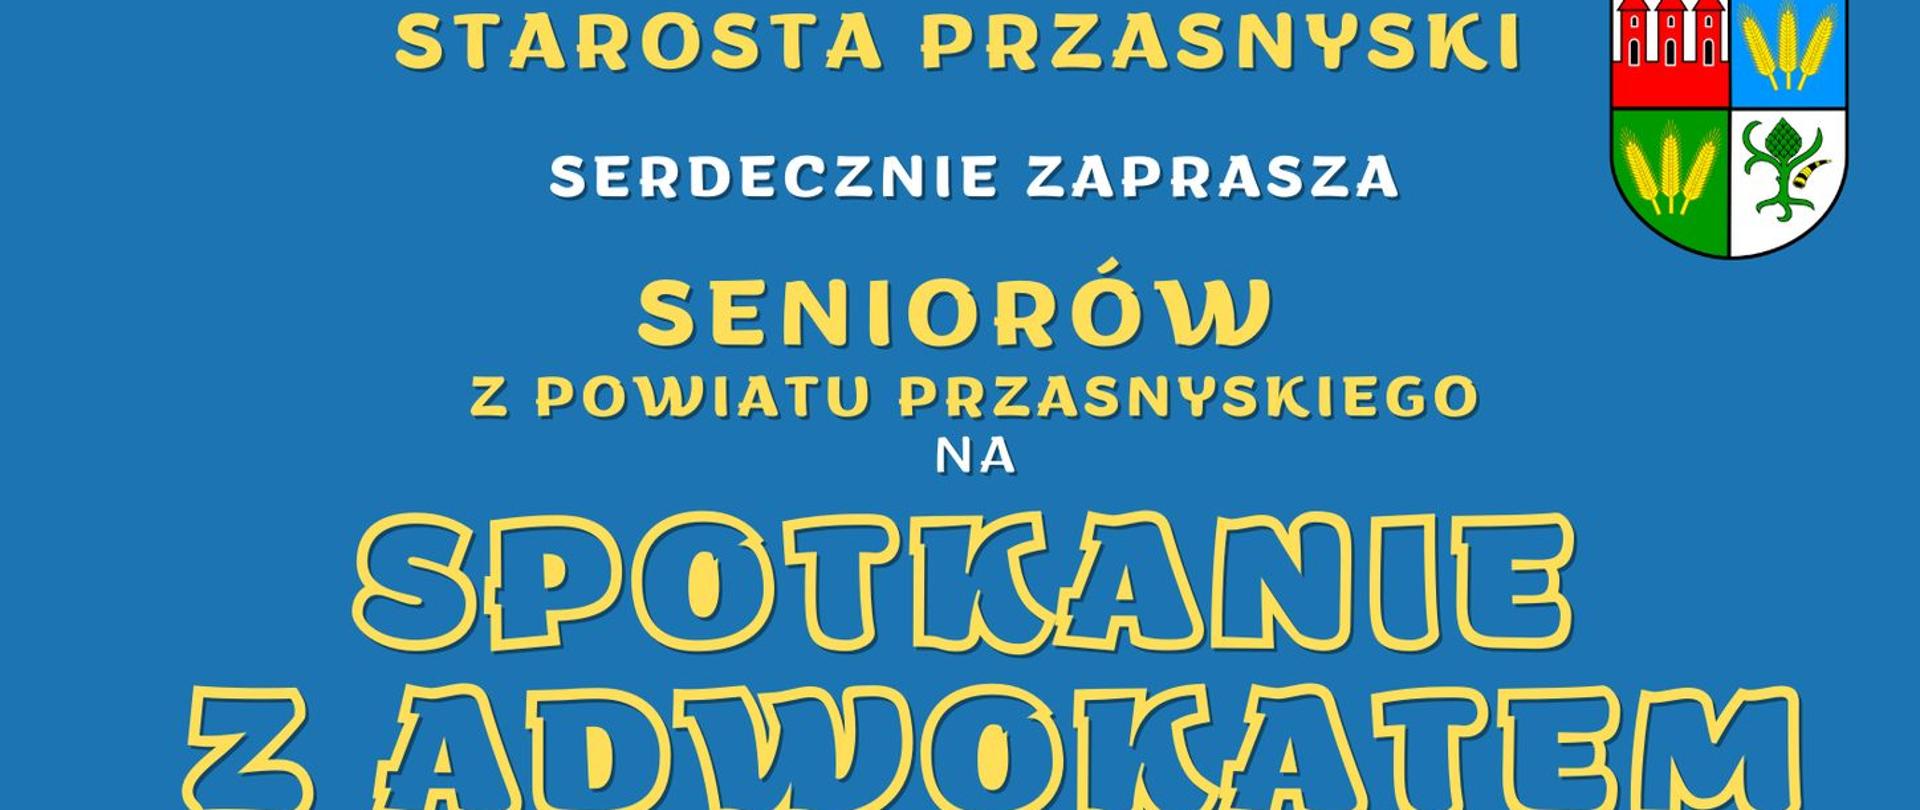 Plakat promujący organizowanie przez Powiat Przasnyski spotkanie z adwokatem, przeznaczone dla seniorów.